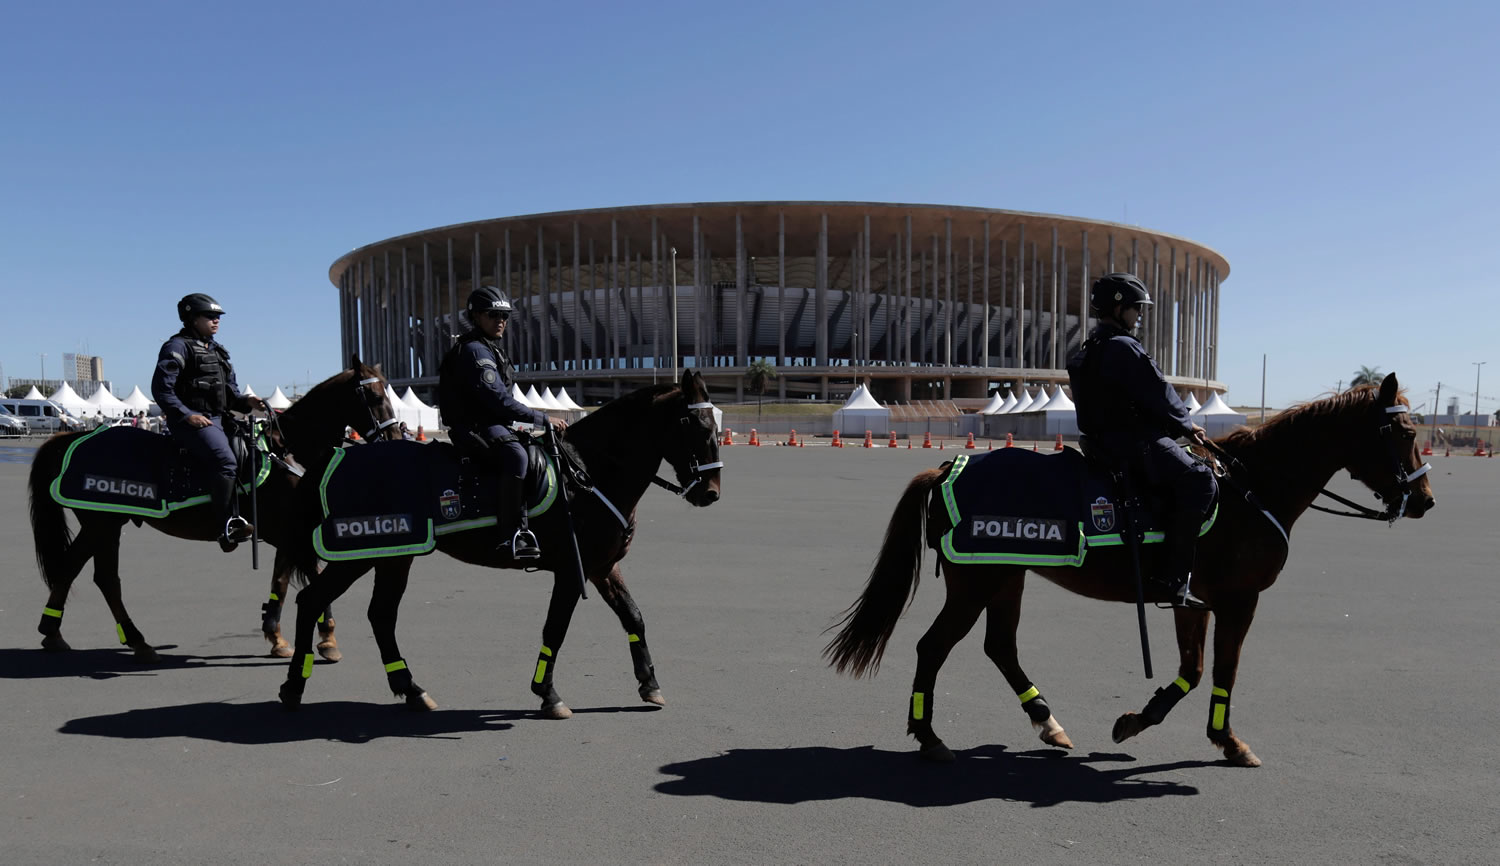 Military police patrol on horseback outside the National Stadium in Brasilia, Brazil, on Wednesday.